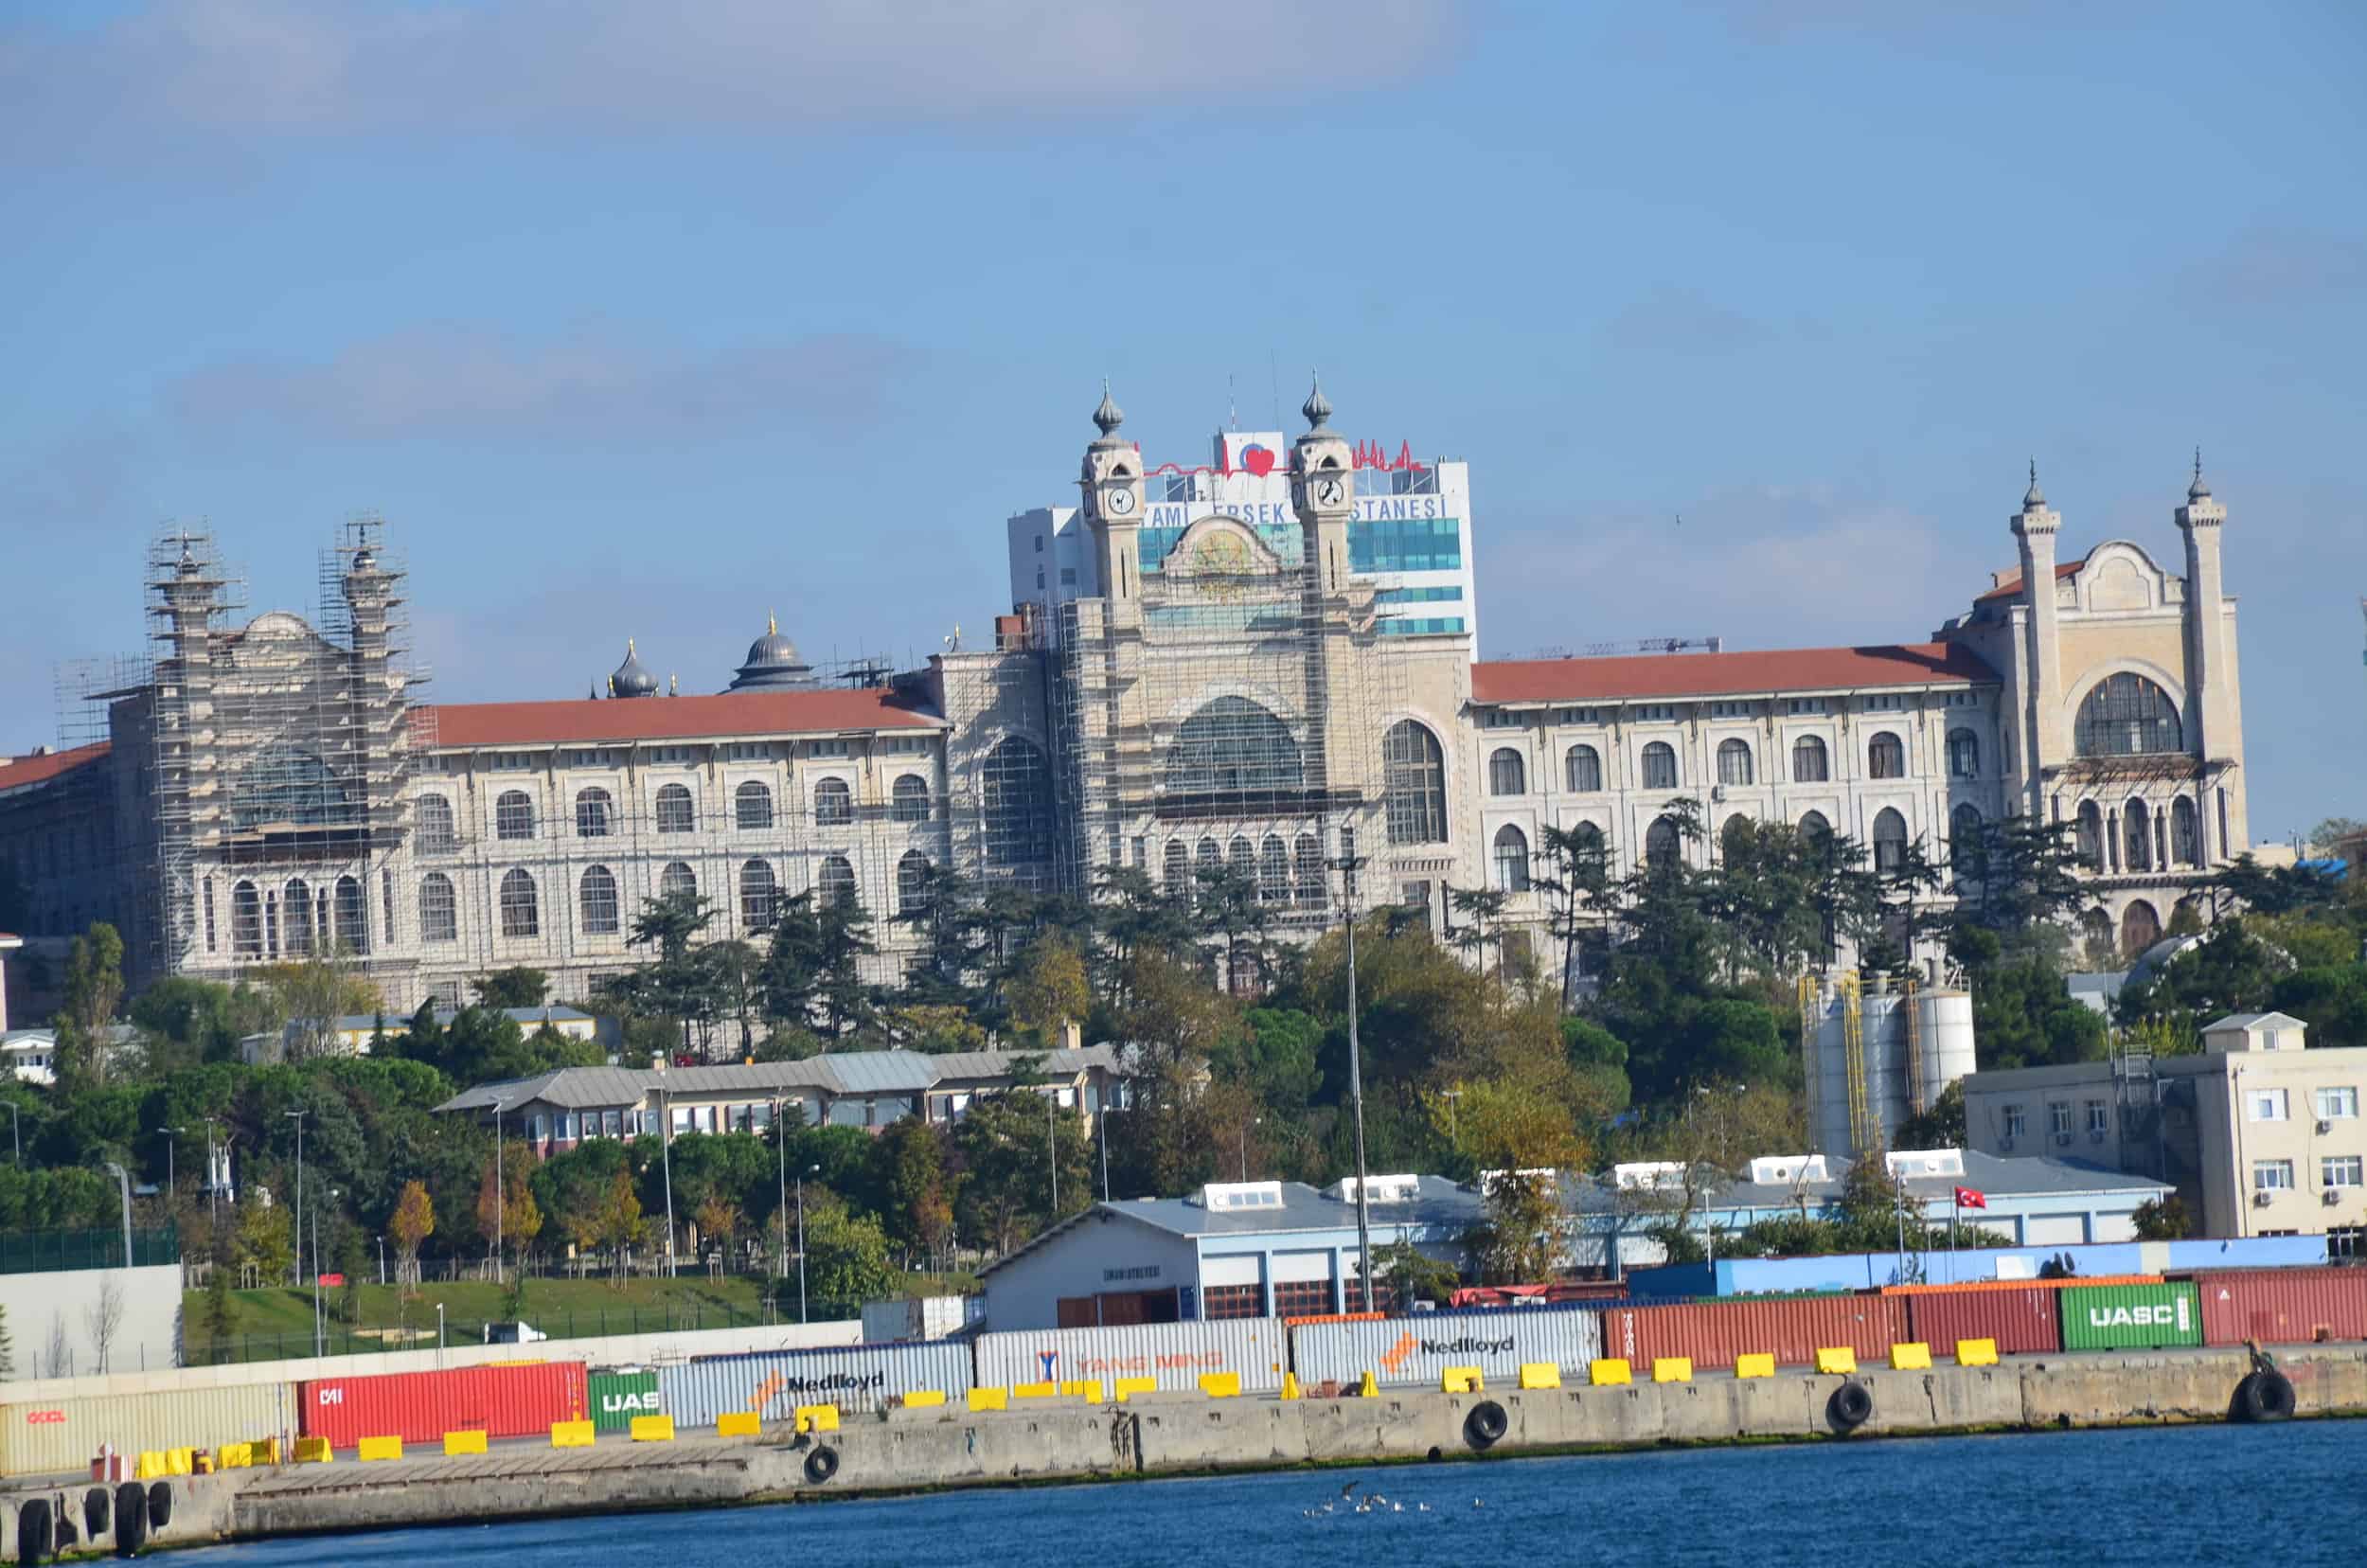 Marmara University in Selimiye, Üsküdar, Istanbul, Turkey